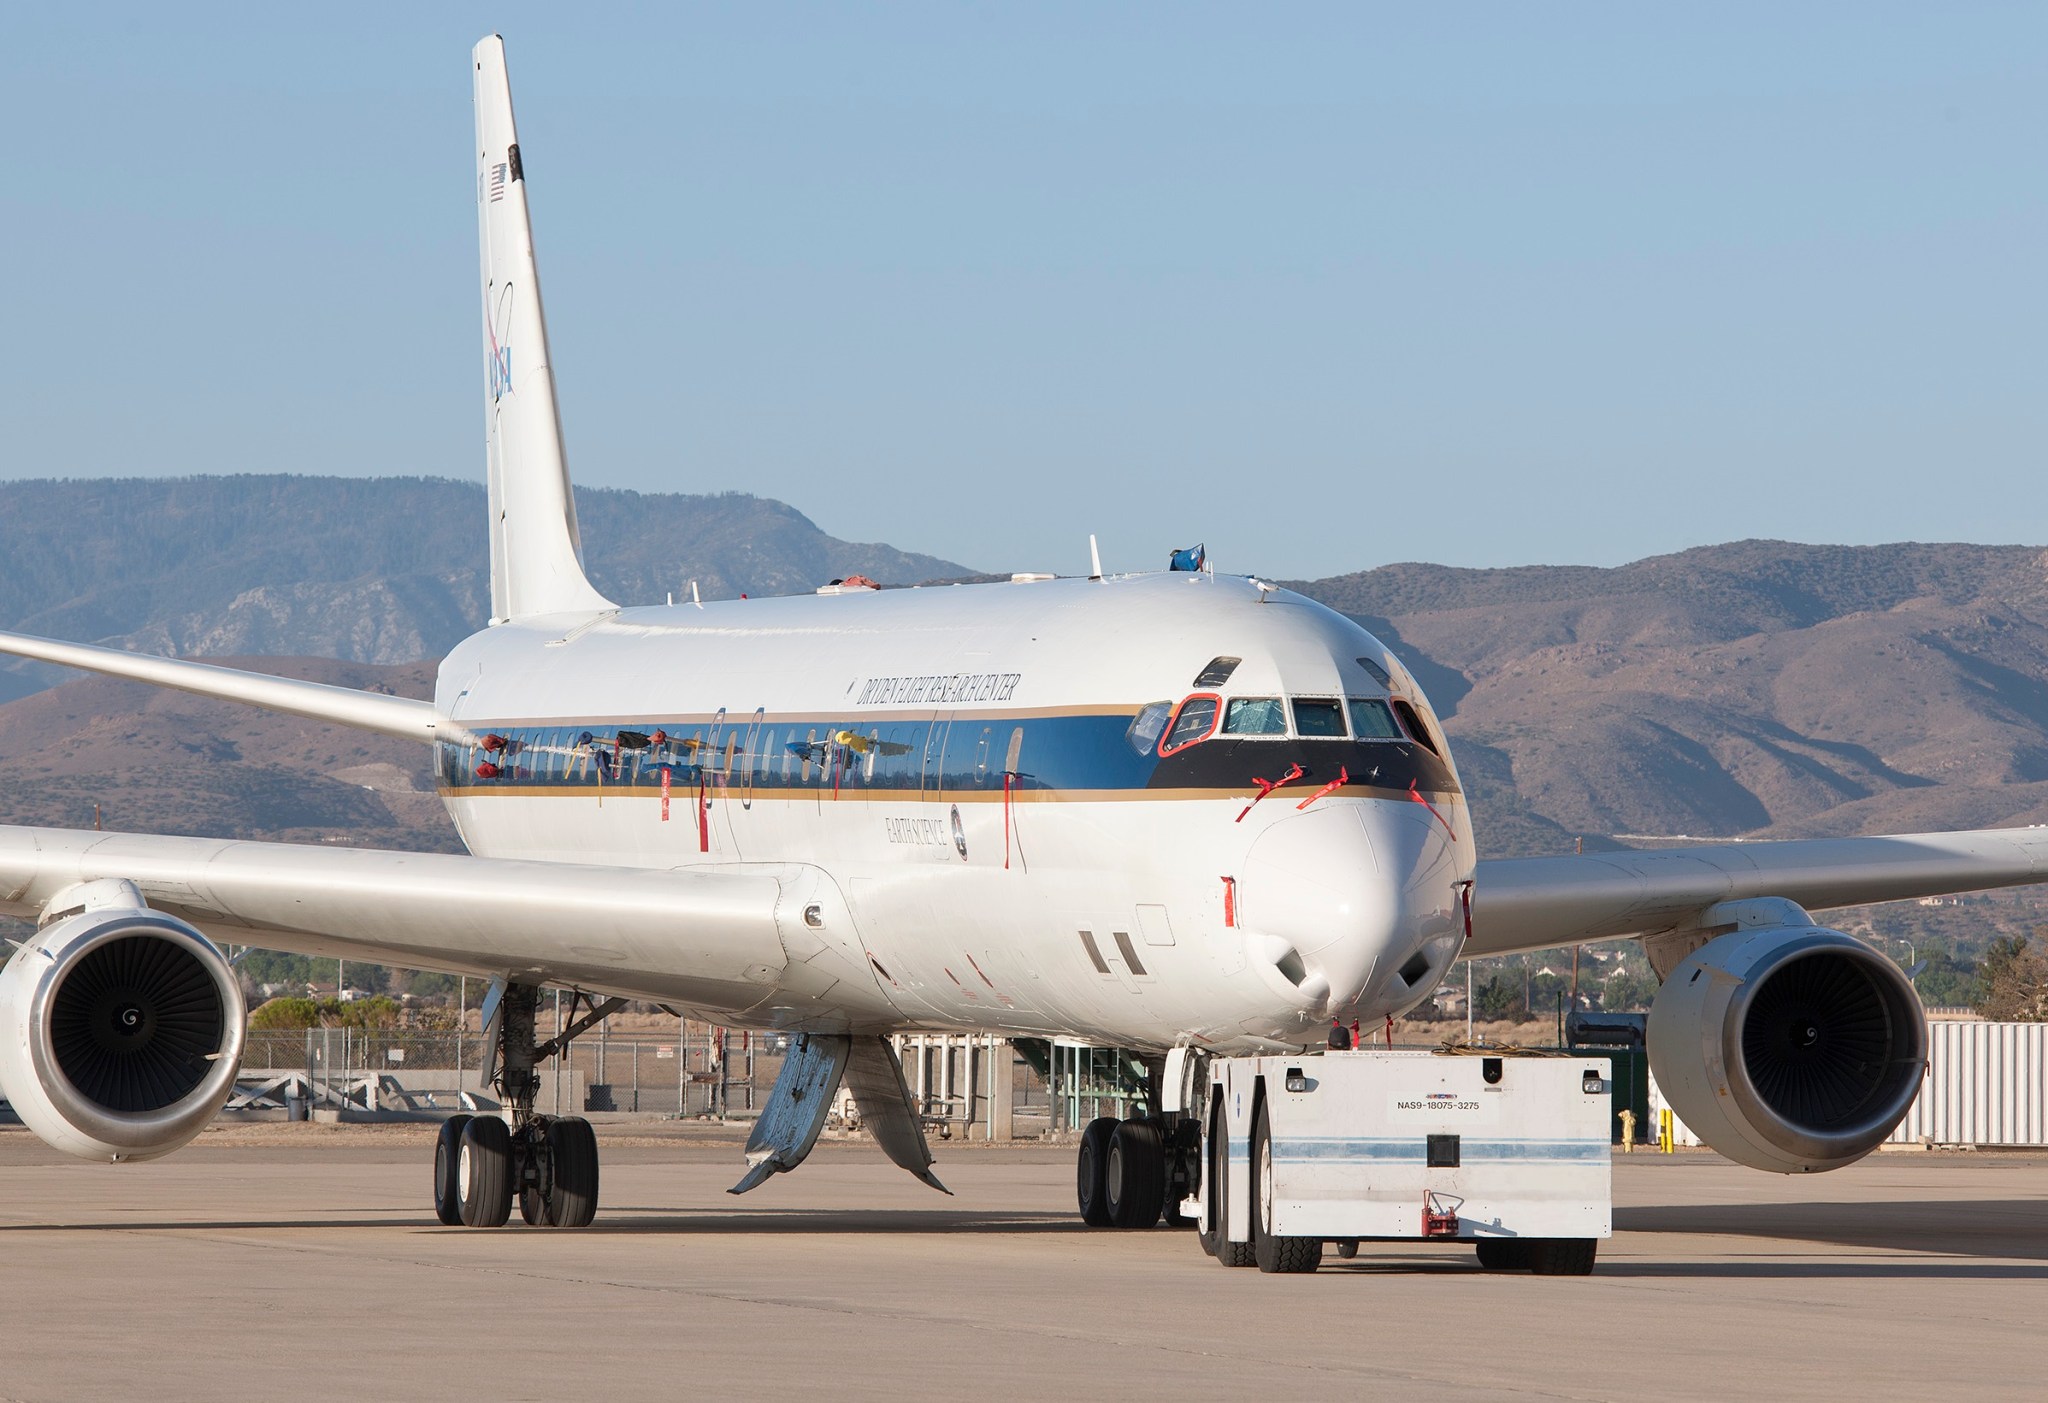 NASA’s DC-8 flying laboratory